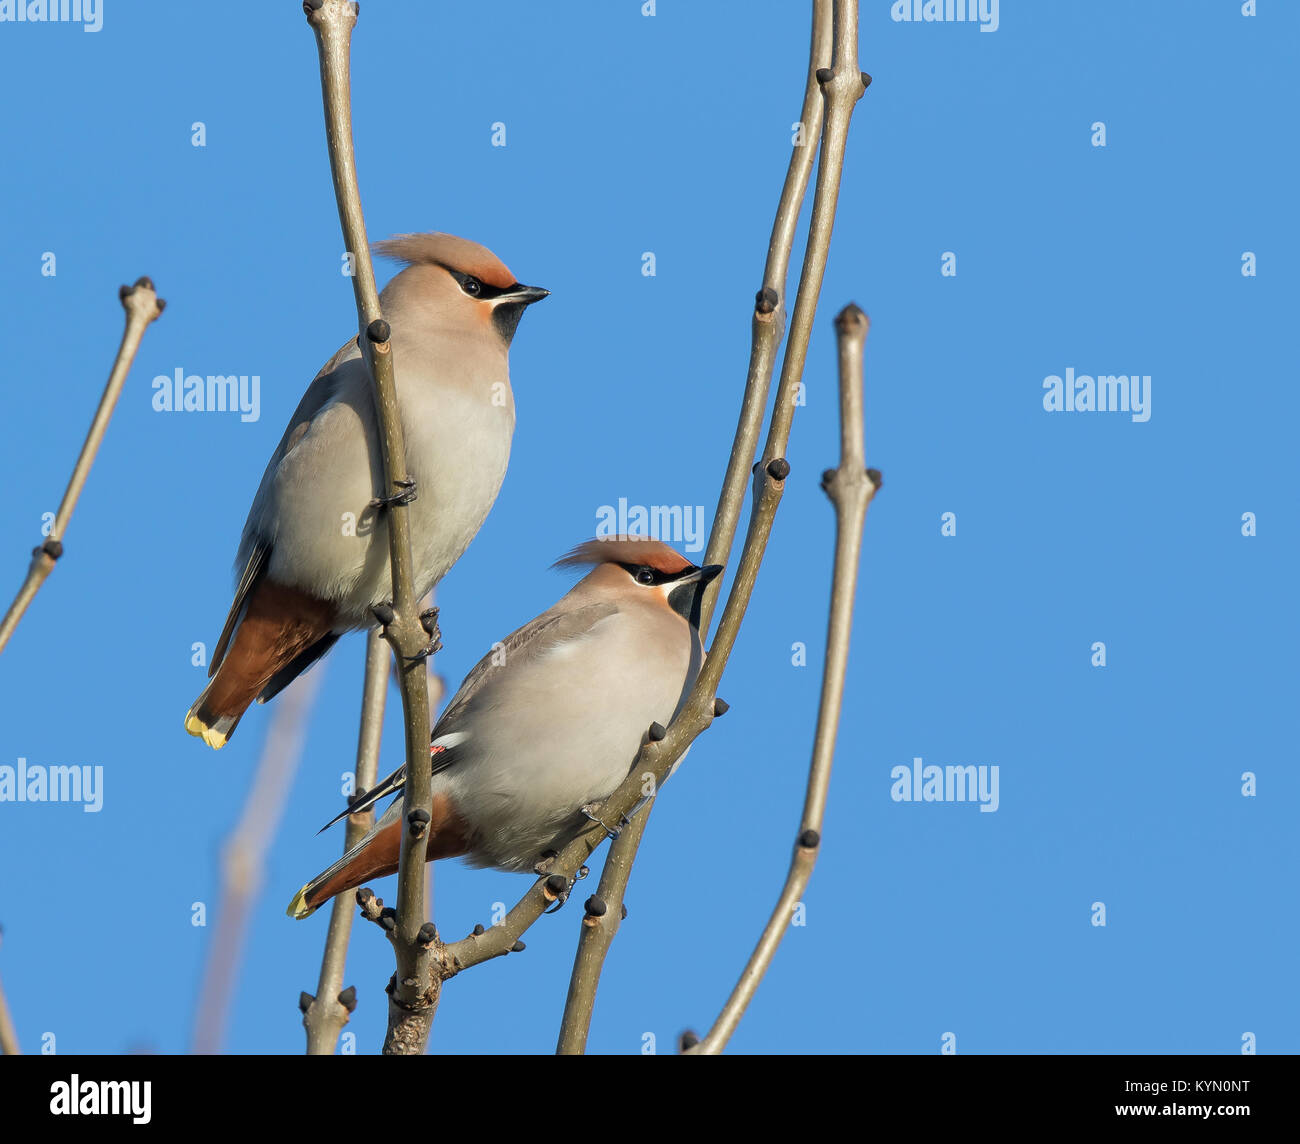 Dettagliato, angolo basso in prossimità di due UK waxwings (Bombycilla garrulus) gli uccelli arroccato isolato nella struttura ad albero sfrondato, in inverno il sole con cielo blu chiaro. Foto Stock